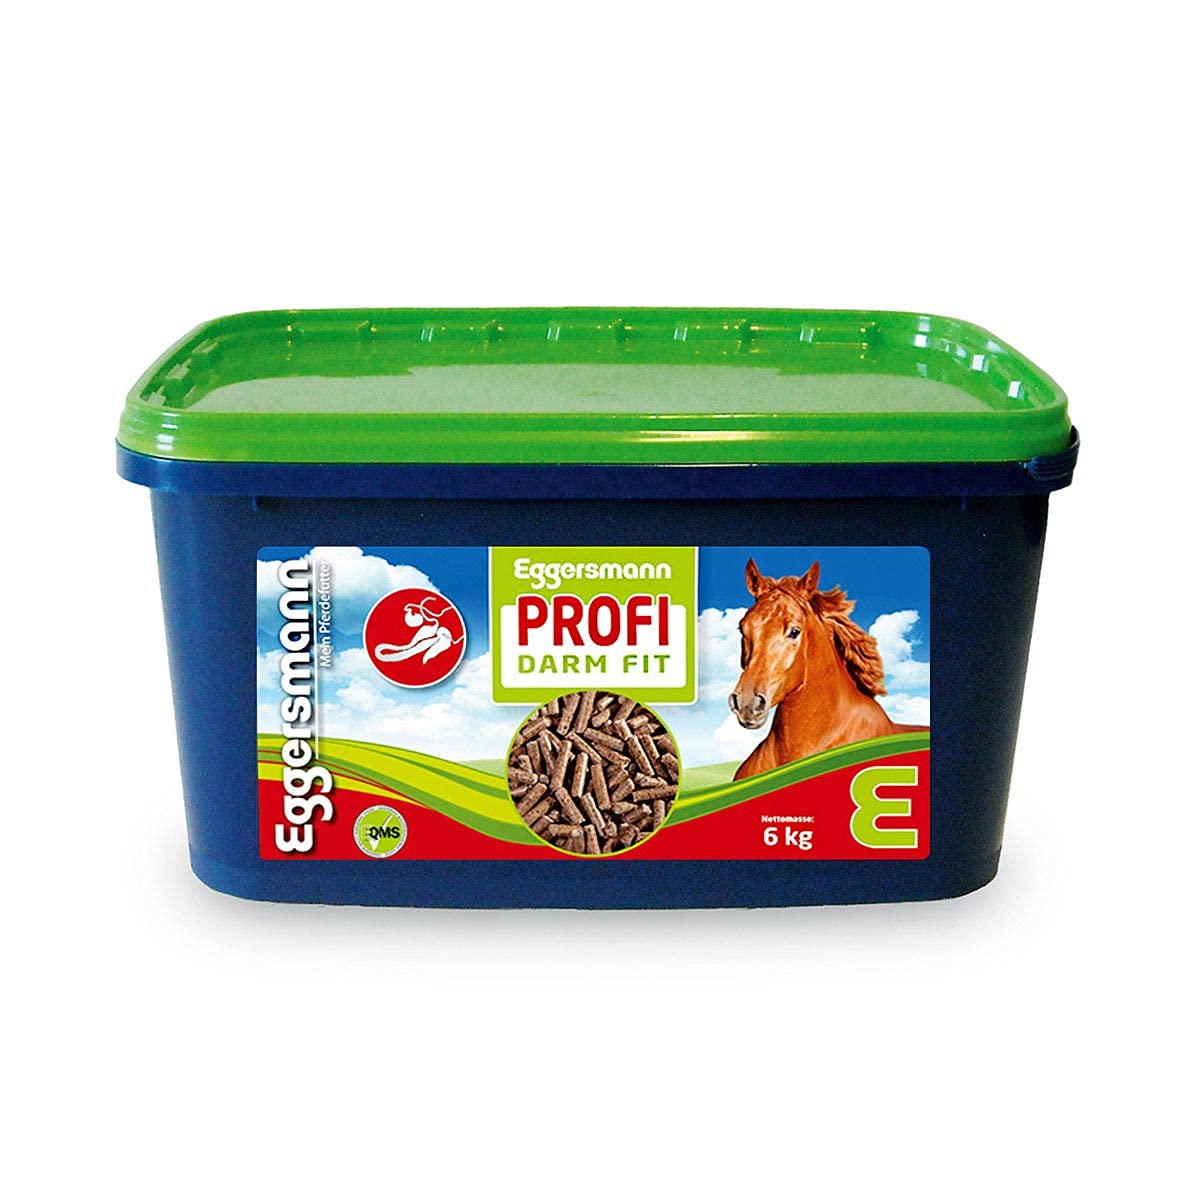 Eggersmann Profi Darm Fit – Ergänzungsfuttermittel für Pferde – Zur Verminderung von Kotwasser – 6 kg Eimer